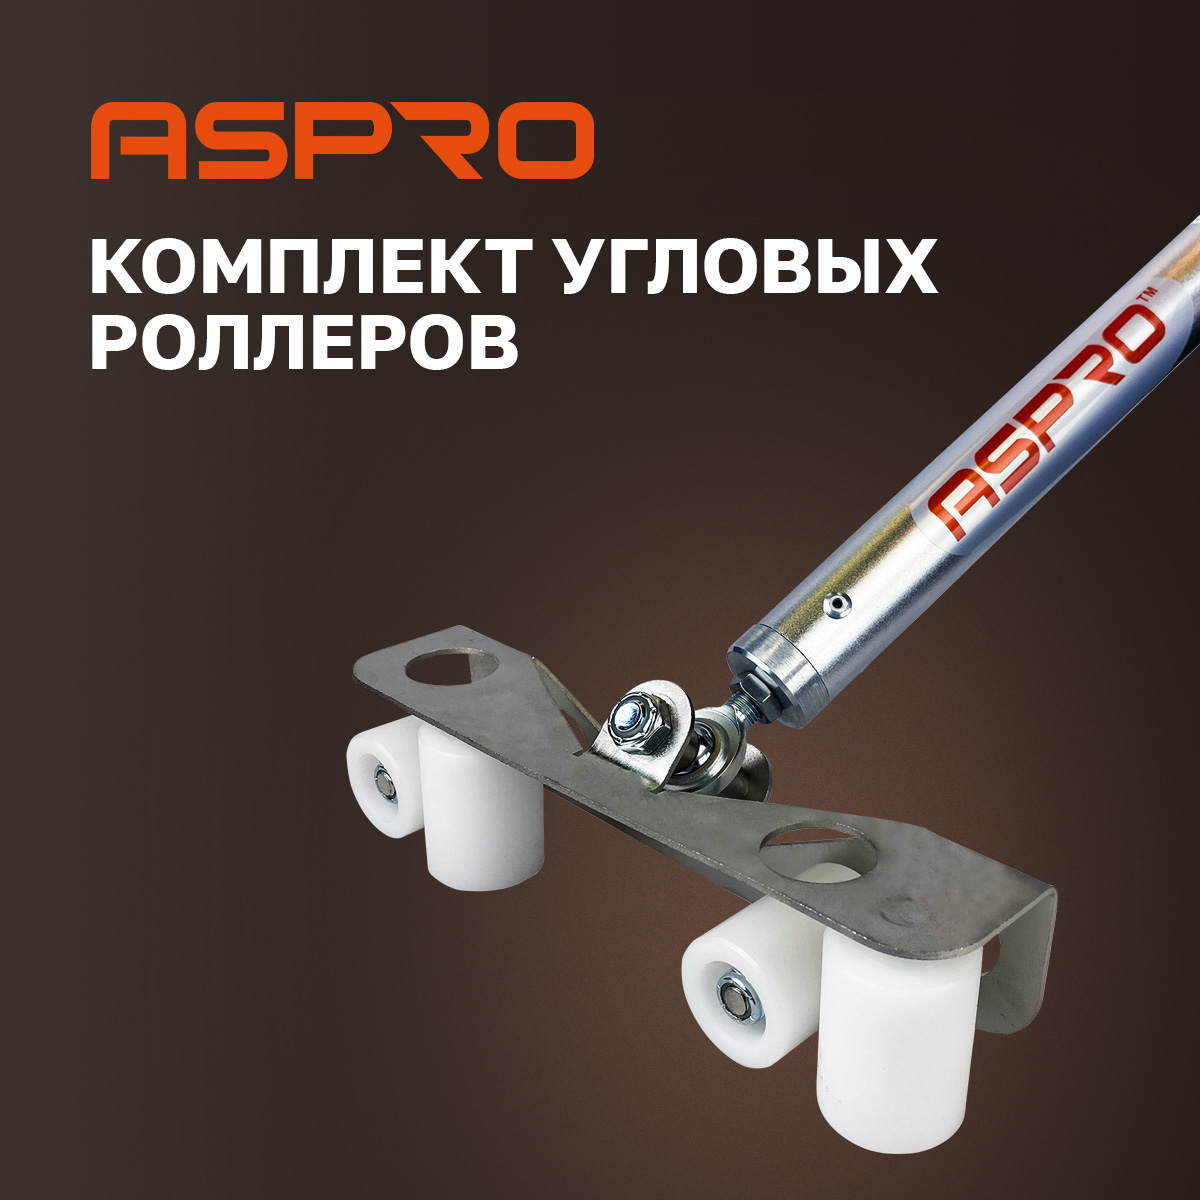 Комплект угловых роллеров Aspro, 102280 комплект угловых роллеров aspro 102280